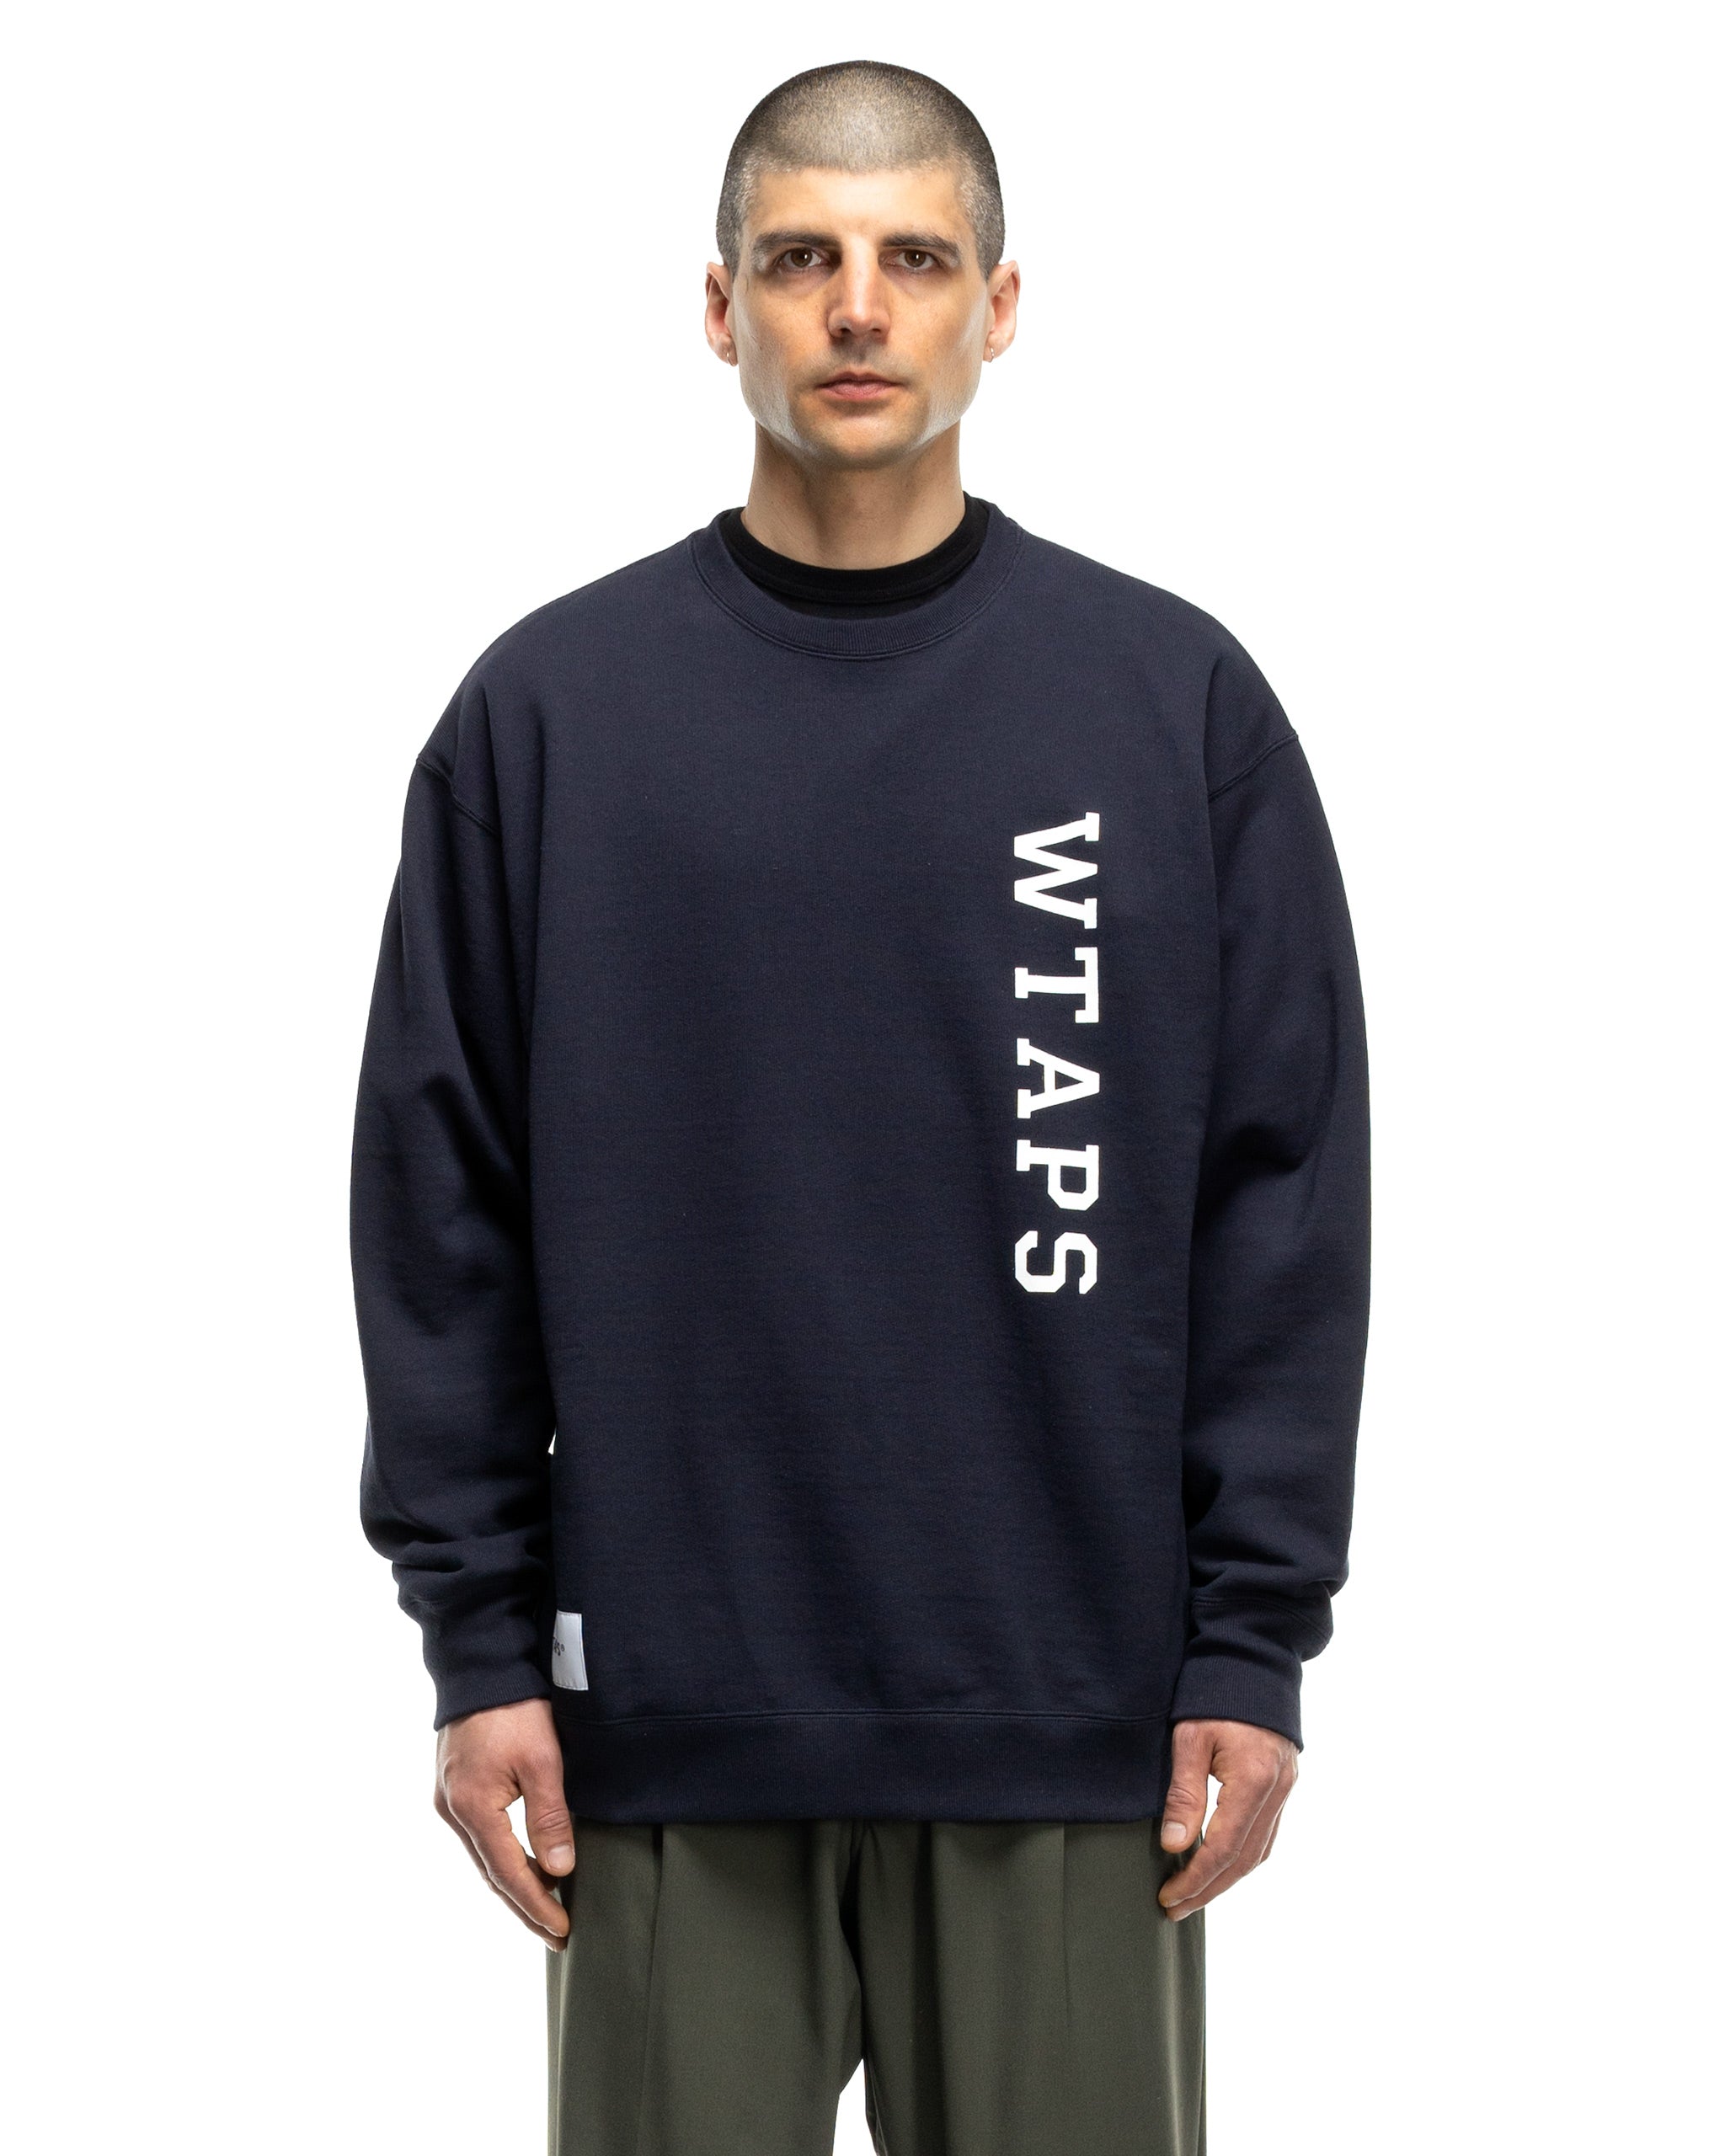 Design 01 / Sweater / Cotton. College Navy